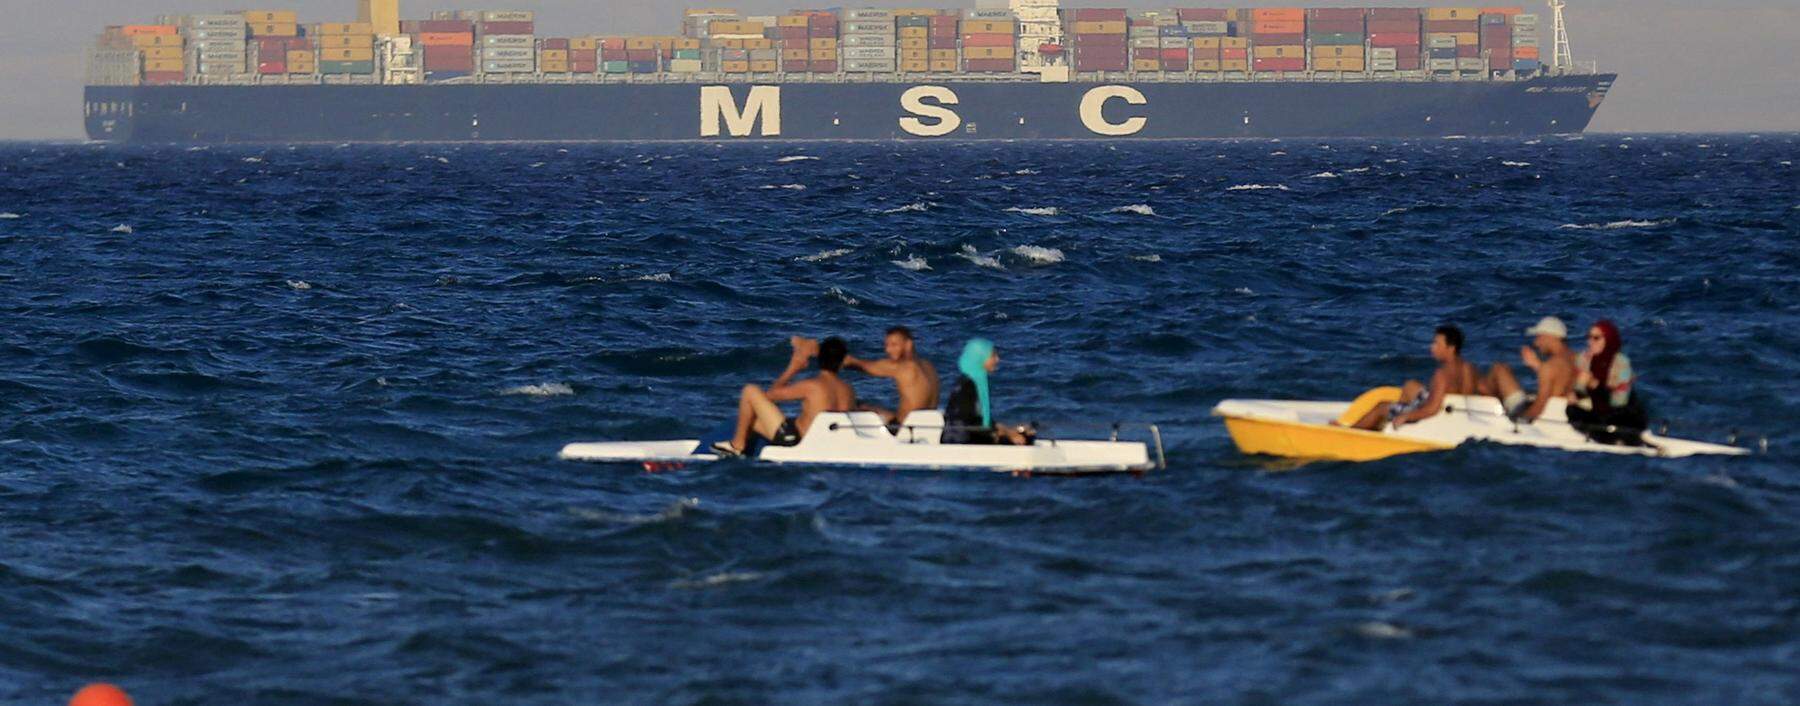 Containerschiffe kreuzen derzeit nicht so unbesorgt durchs Rote Meer.